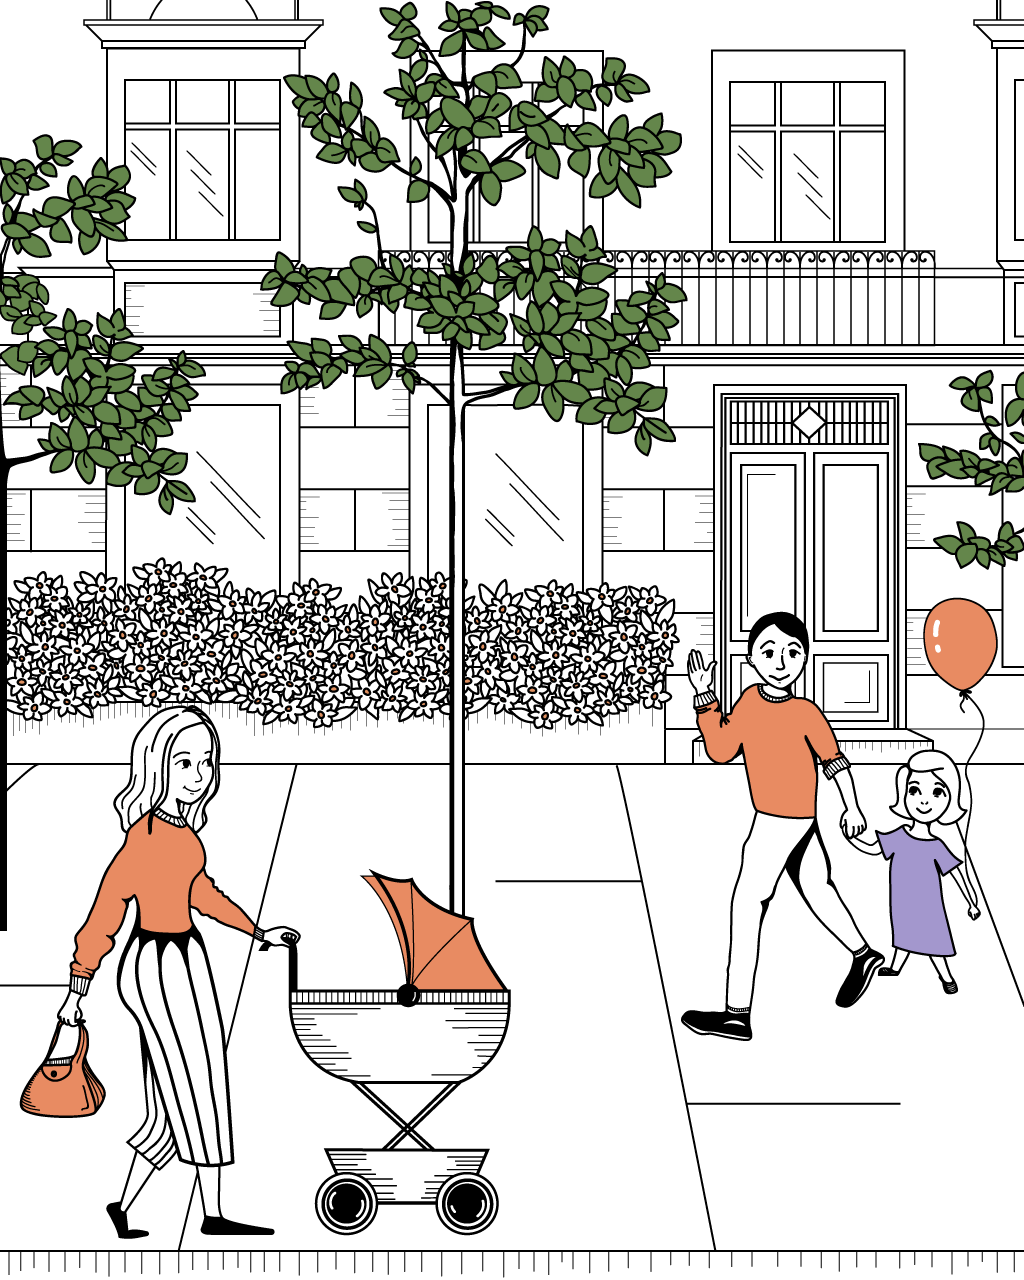 Ilustracja przedstawiająca rodzinę robiącą zakupy w pobliskim sklepie